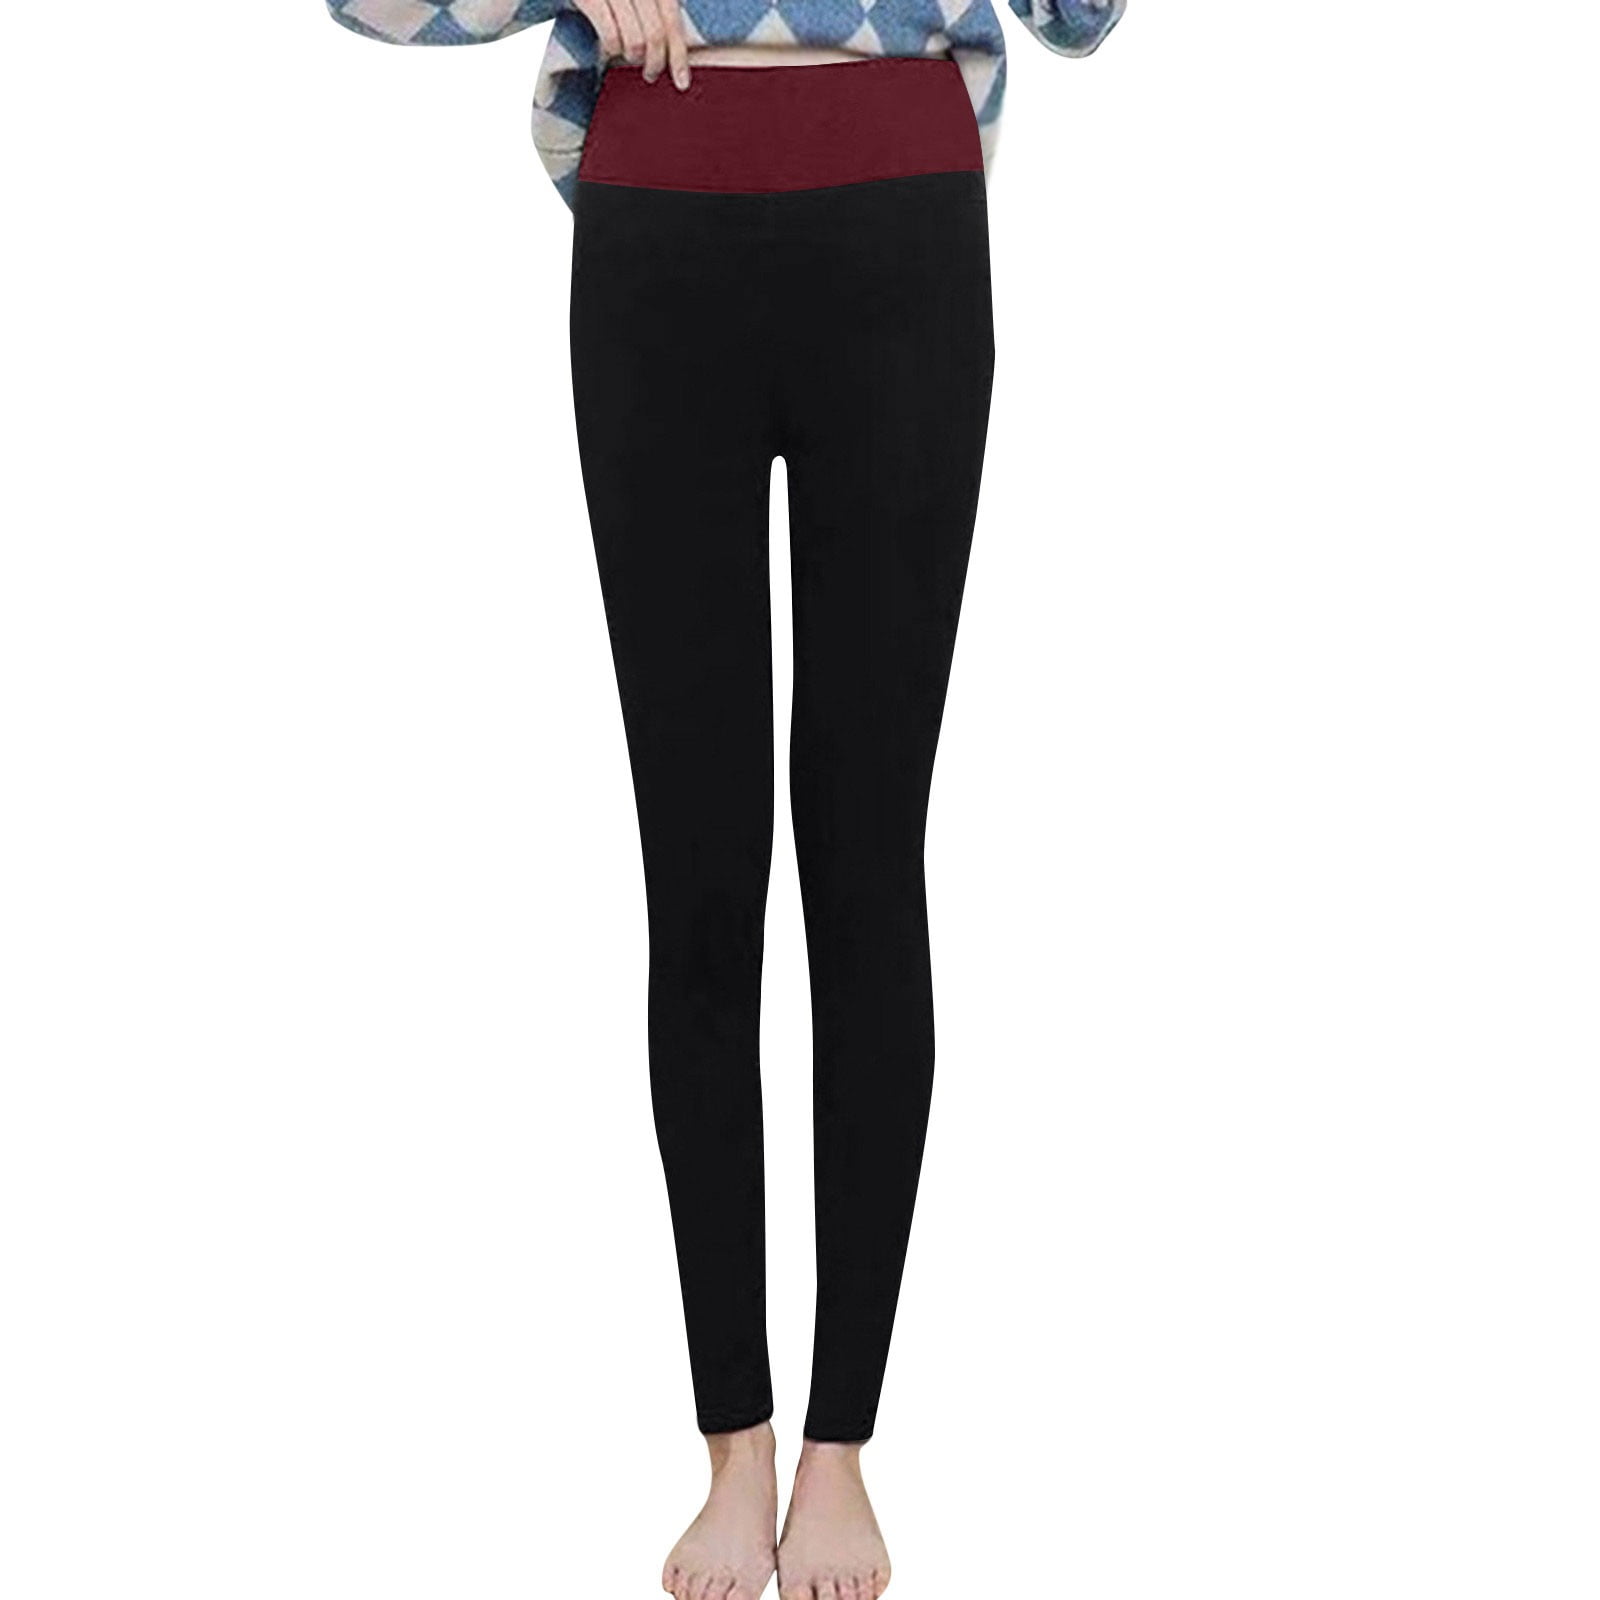 ZXHACSJ Women's Solid Color Plus Velvet Warm Elastic Leggings High Waist  Cotton Pants Wine L 